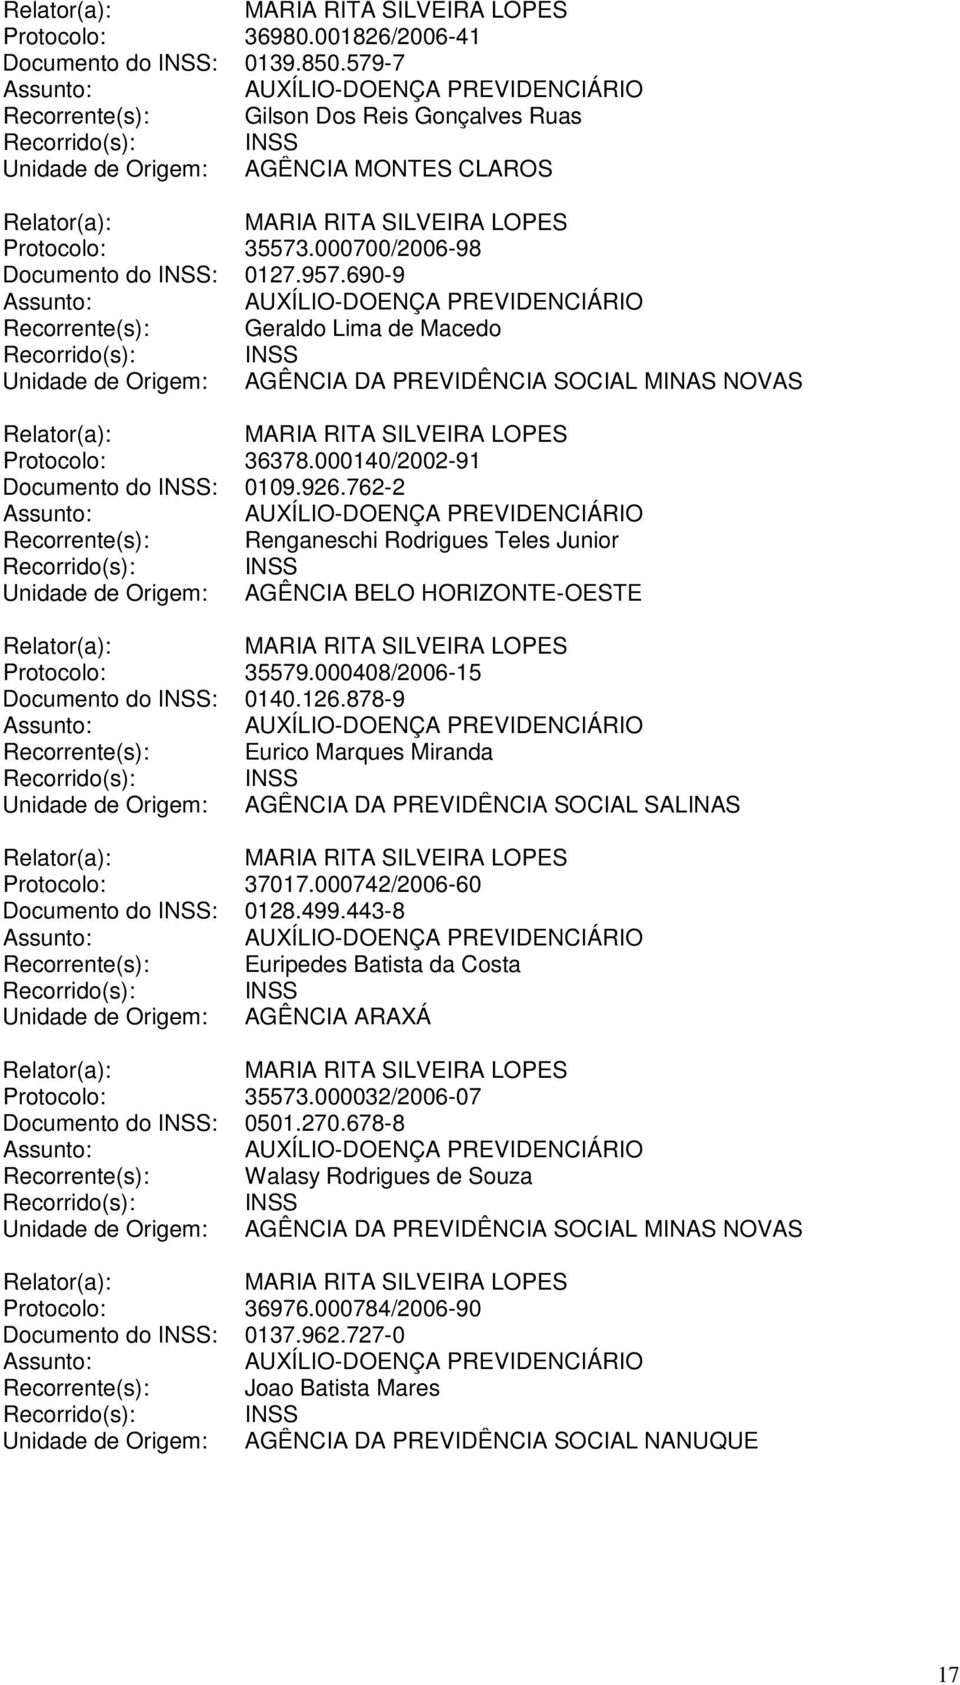 762-2 Recorrente(s): Renganeschi Rodrigues Teles Junior Unidade de Origem: AGÊNCIA BELO HORIZONTE-OESTE Protocolo: 35579.000408/2006-15 Documento do INSS: 0140.126.